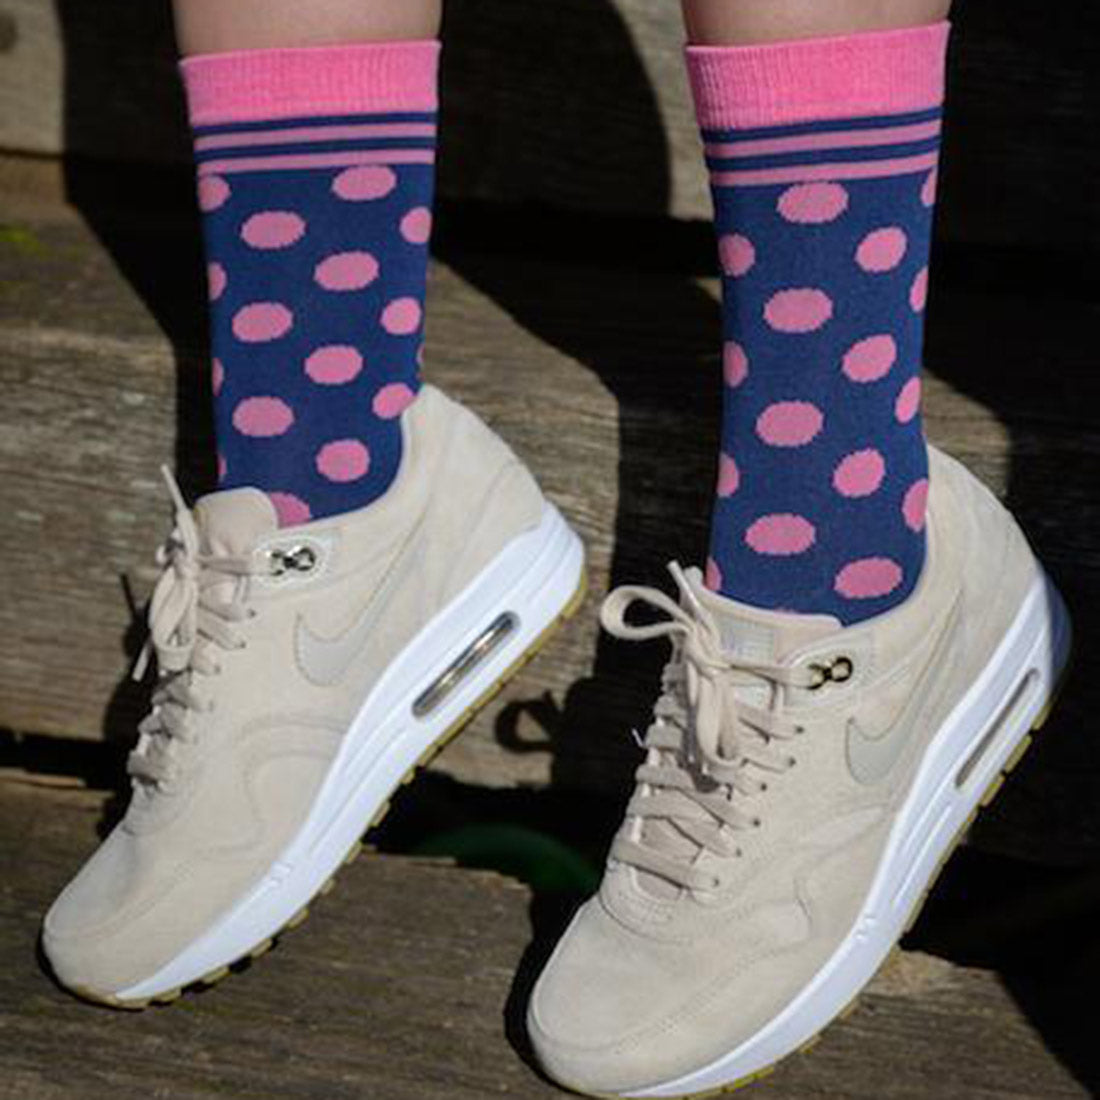 Navy and Pink Polka Dot Bamboo Socks